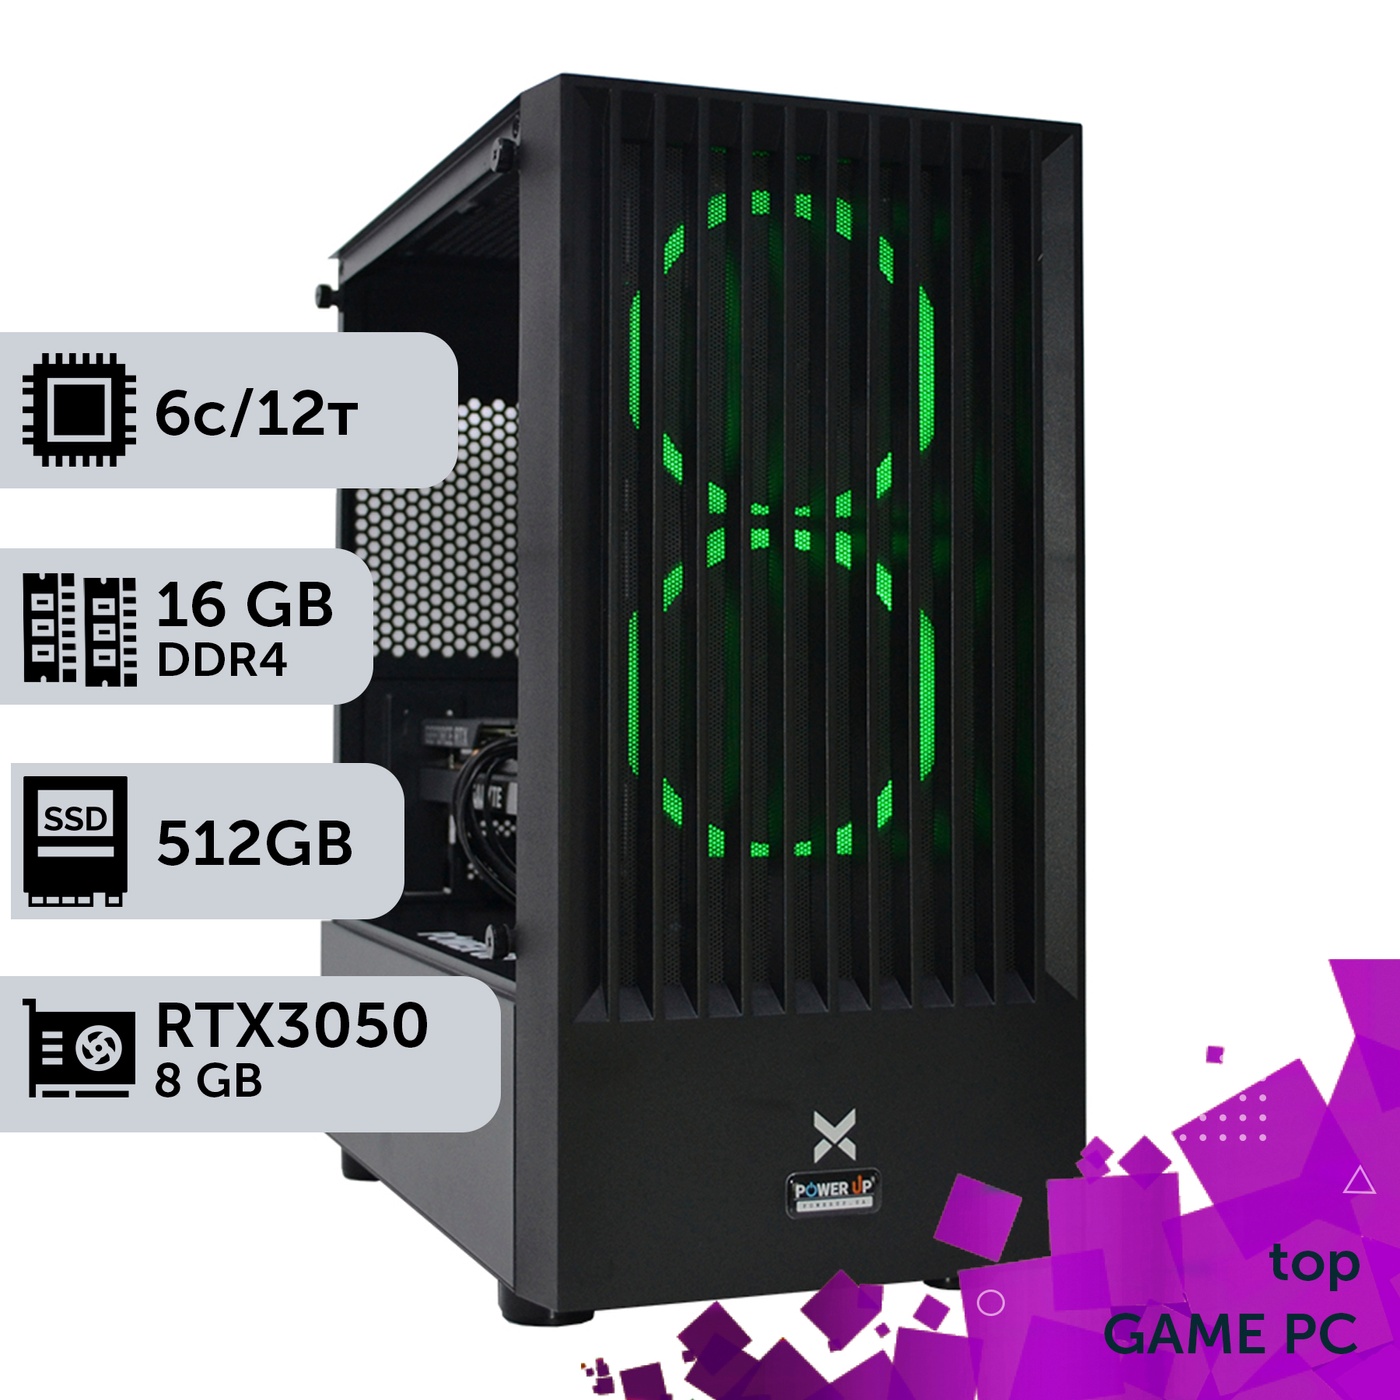 Ігровий комп'ютер GamePC TOP #147 Core i5 10400F/16 GB/SSD 512GB/GeForce RTX 3050 8GB